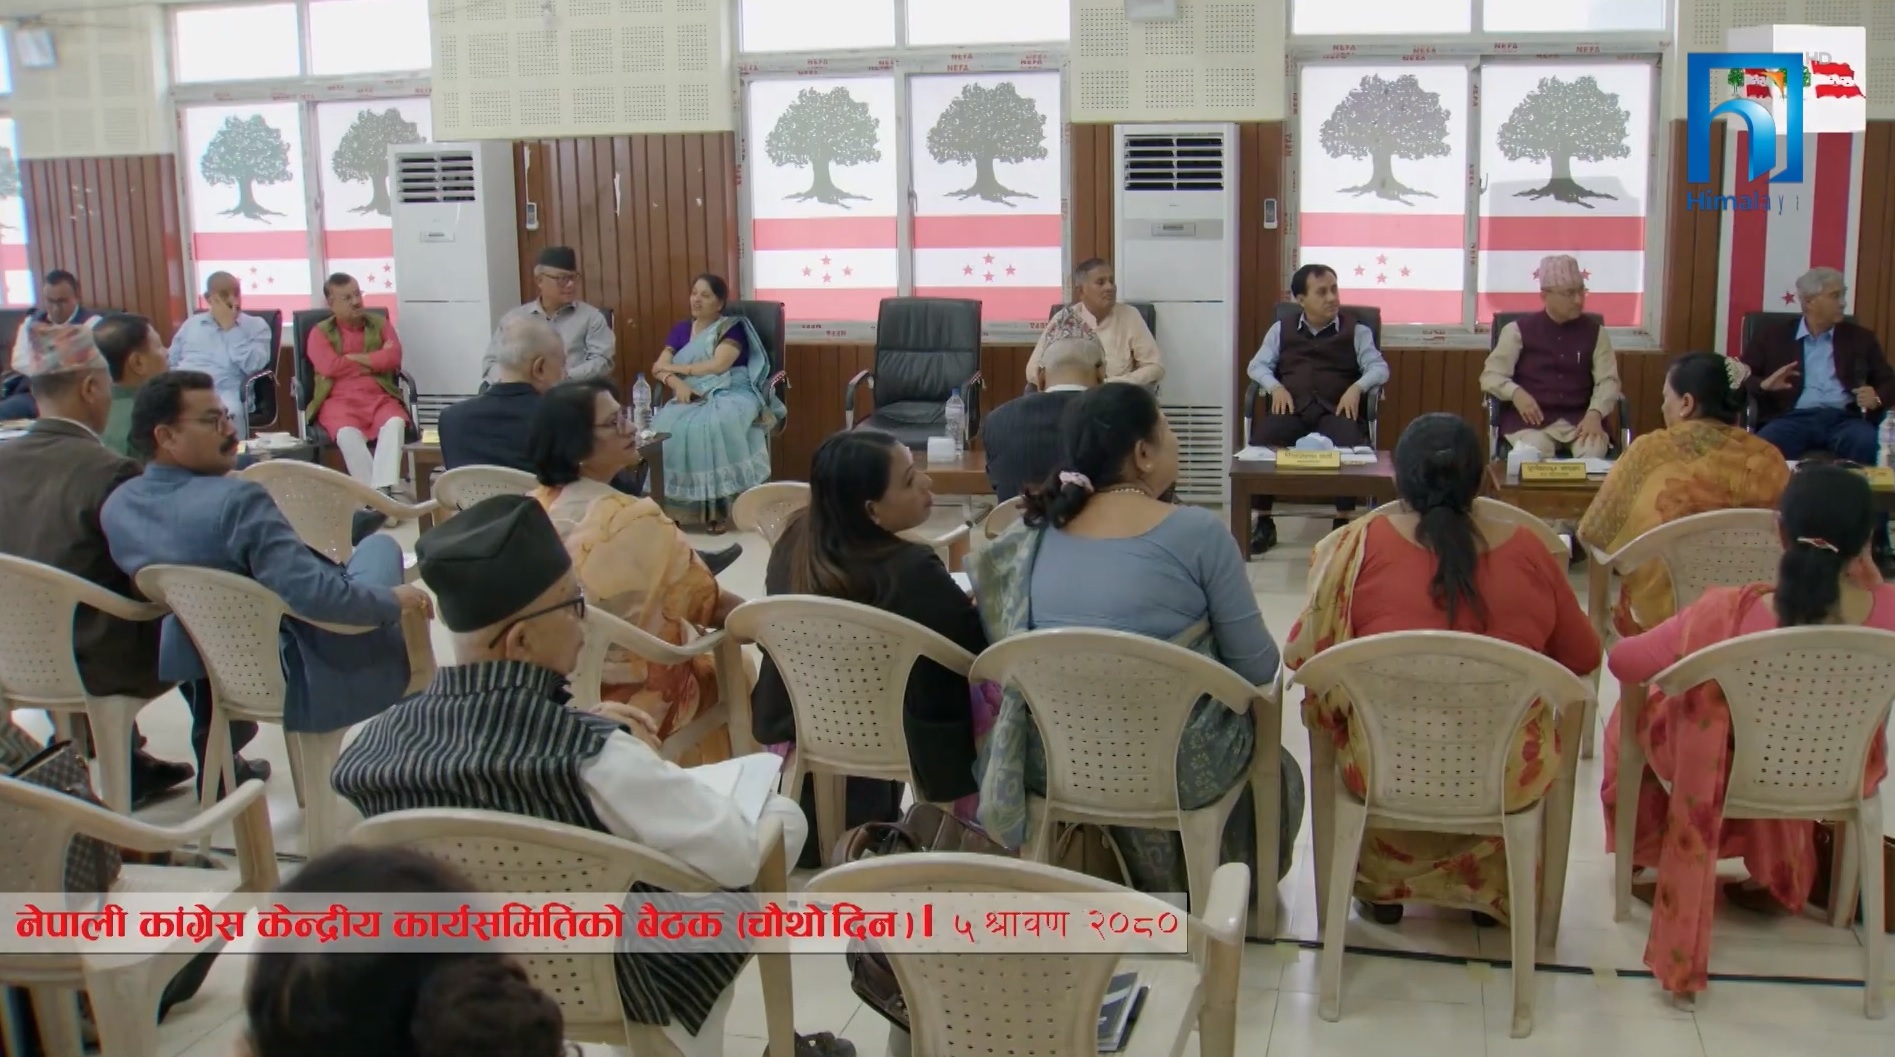 कांग्रेस केन्द्रीय समिति बैठक गुटगत उल्झनमा (भिडियो रिपोर्टसहित)